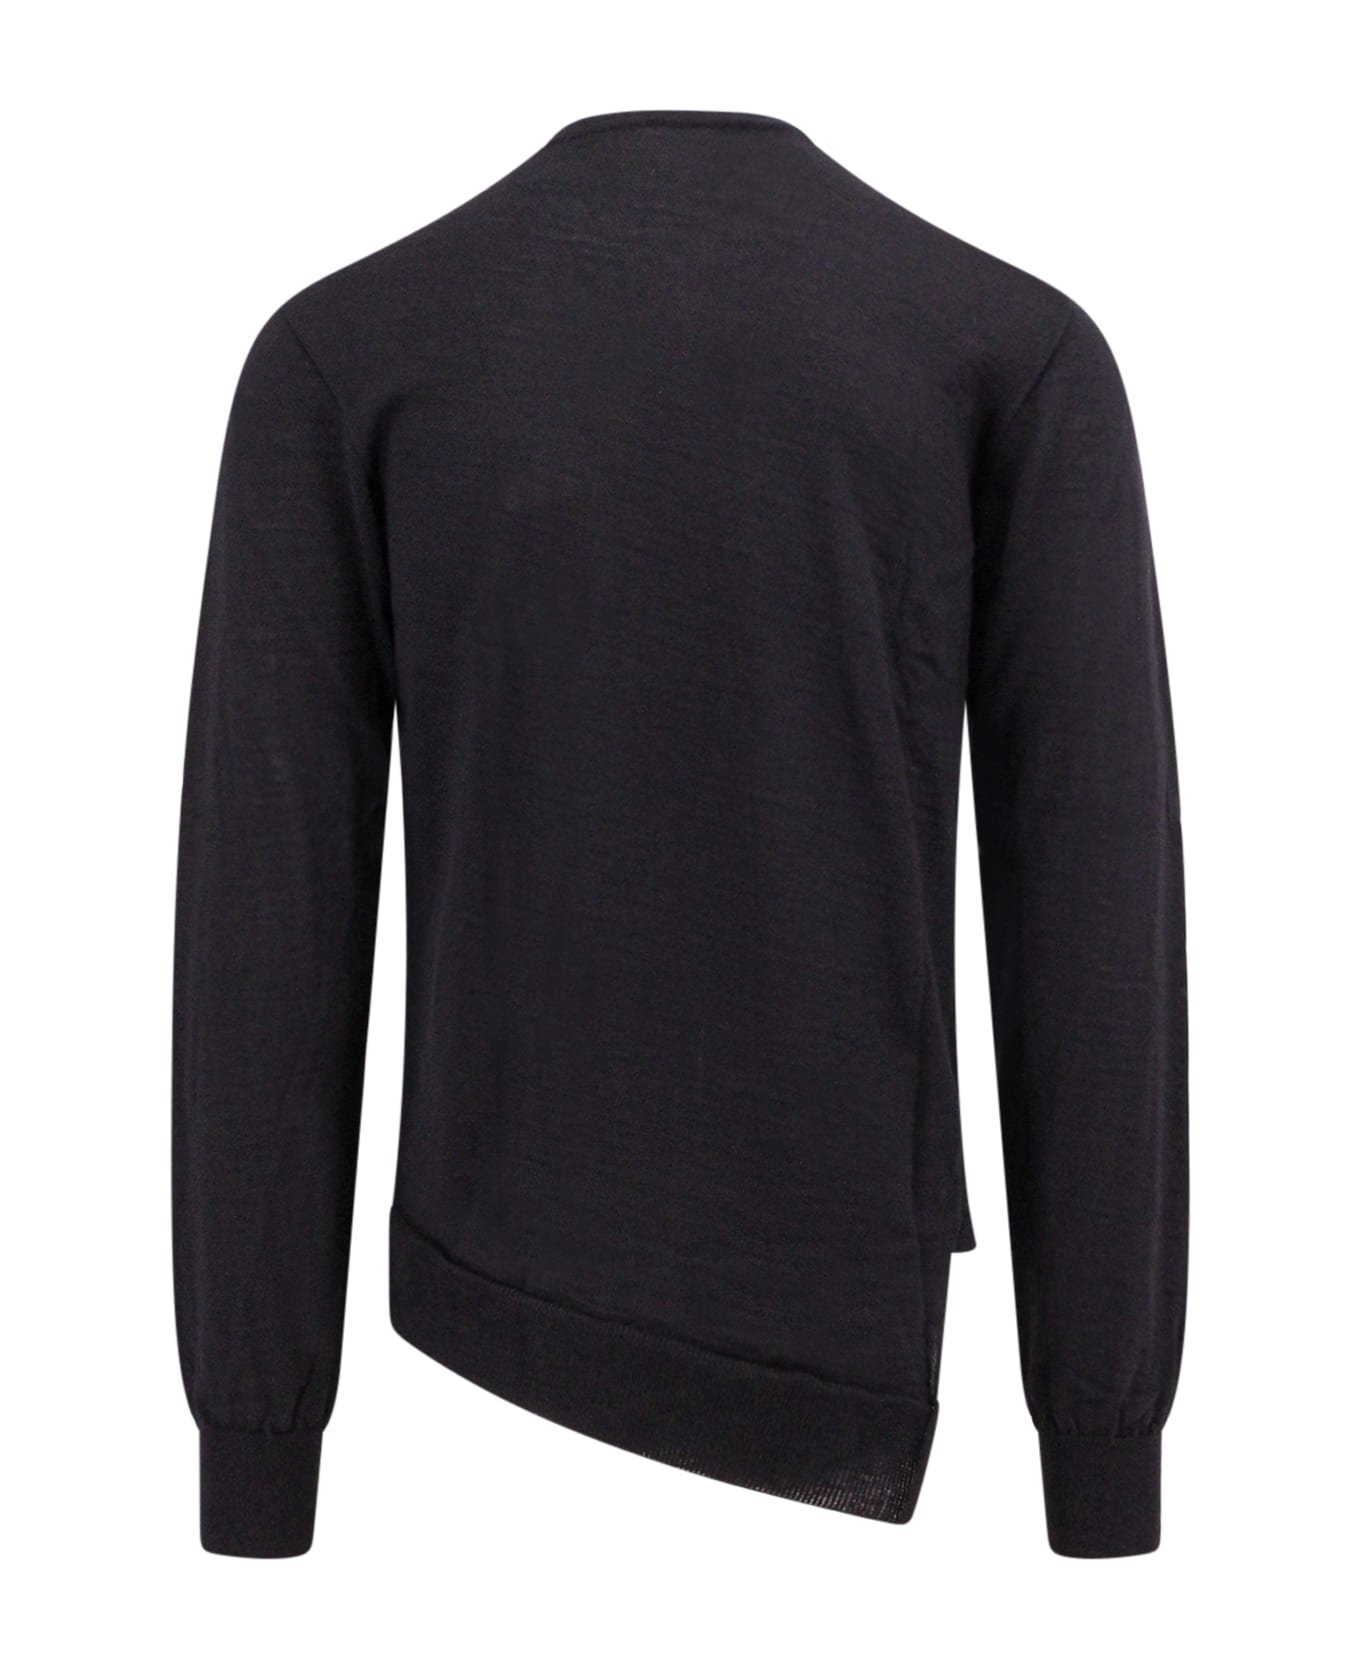 Comme des Garçons Shirt Sweater Sweater - BLACK